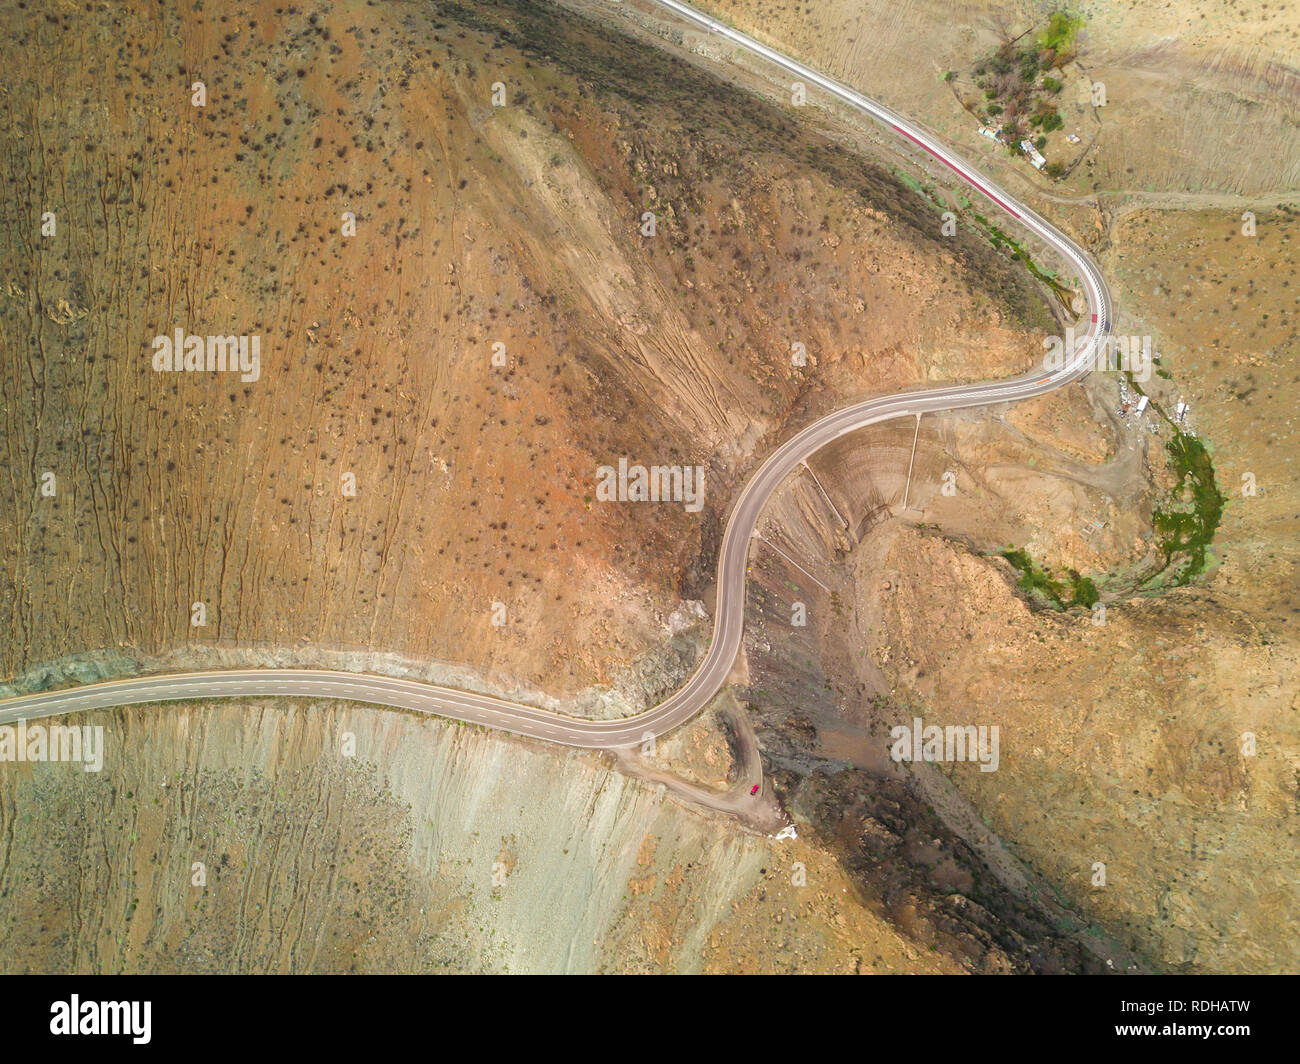 Une vue aérienne d'une route sinueuse dangereuse dans le désert d'Atacama à Paposo, la route fait des virages autour du paysage aride afin de descendre sur la falaise Banque D'Images